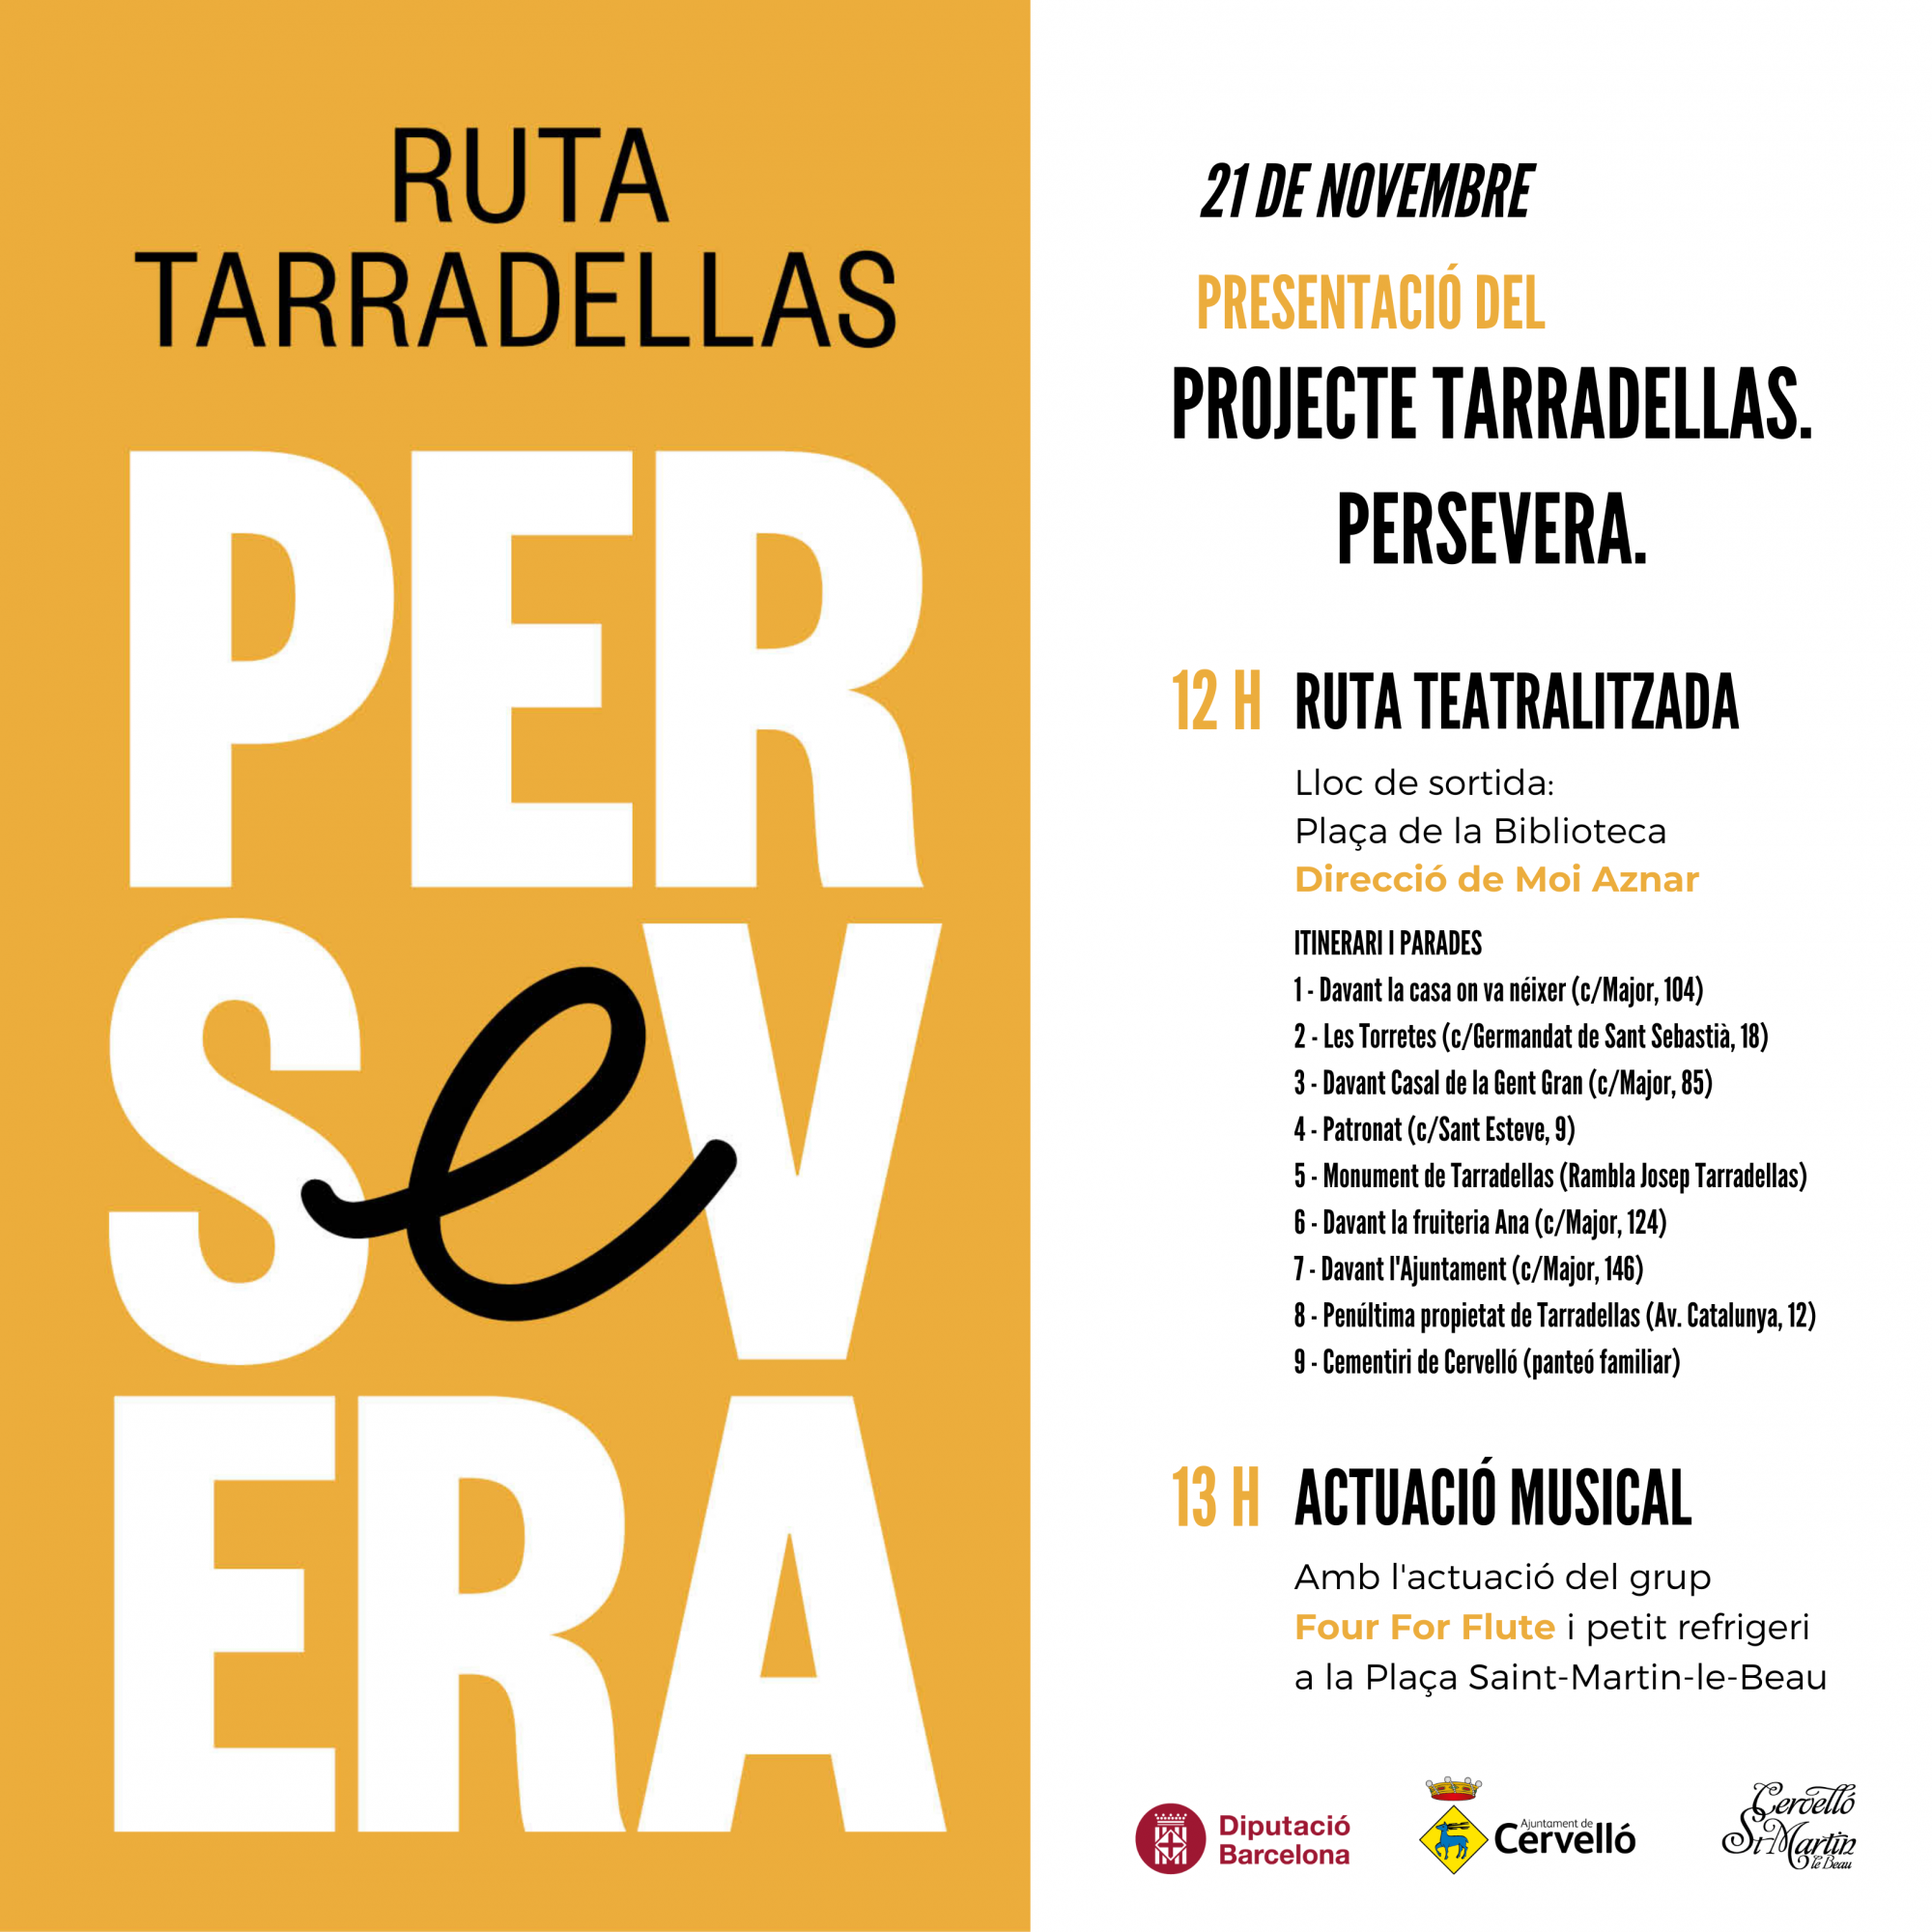 Cervelló entregará el premio Tarradellas Persevera el 21 de noviembre